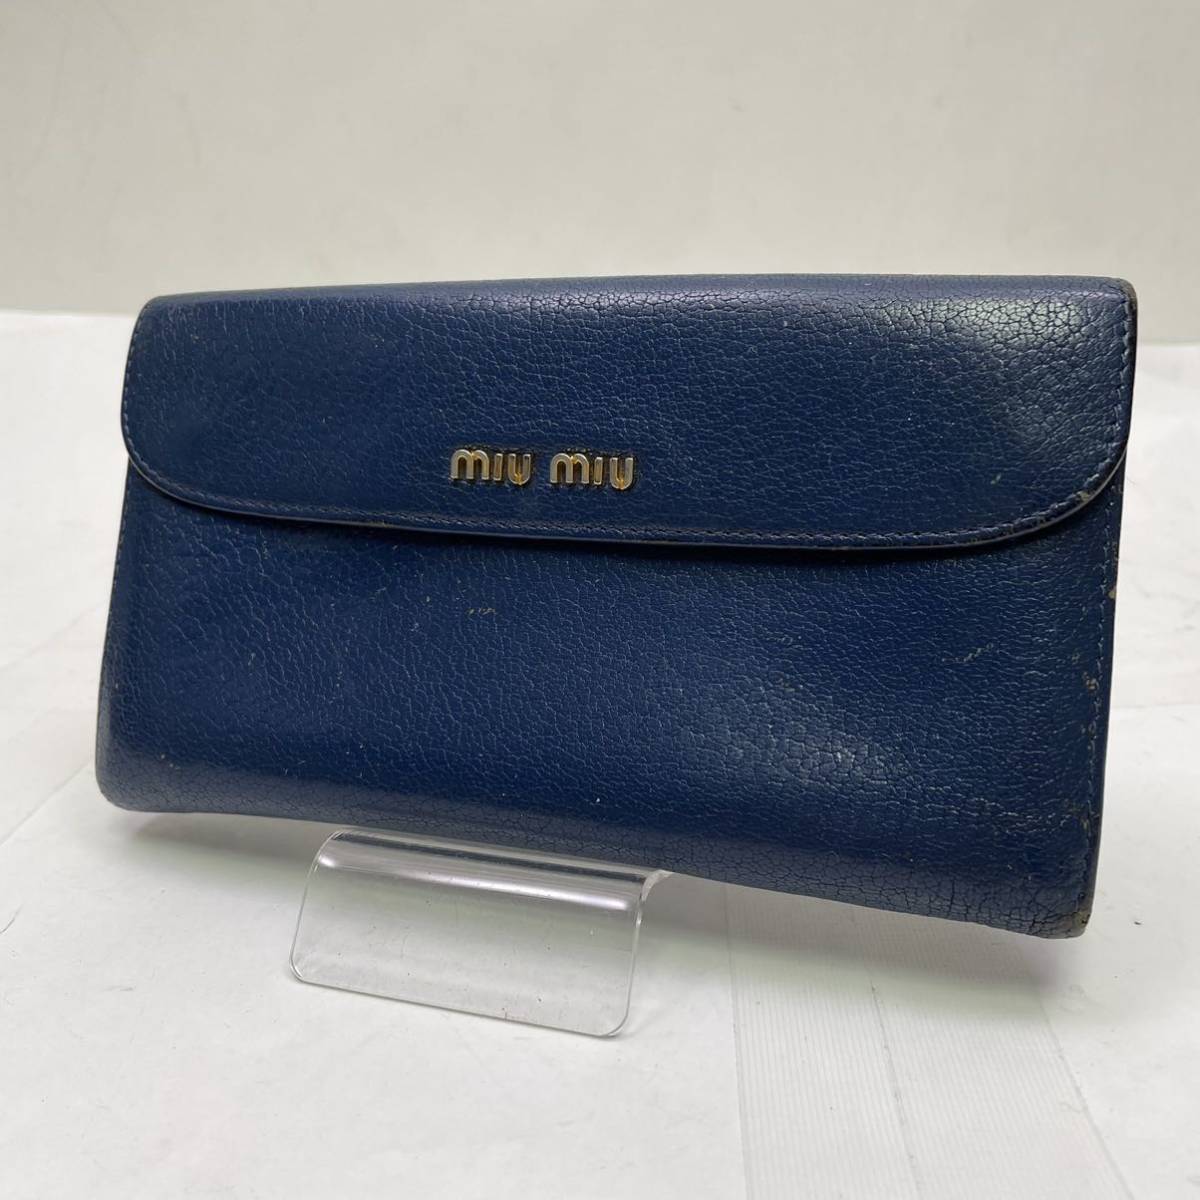 新品即決 miumiu B28-65 ブルー レザー 財布 長財布 ミュウミュウ 女性